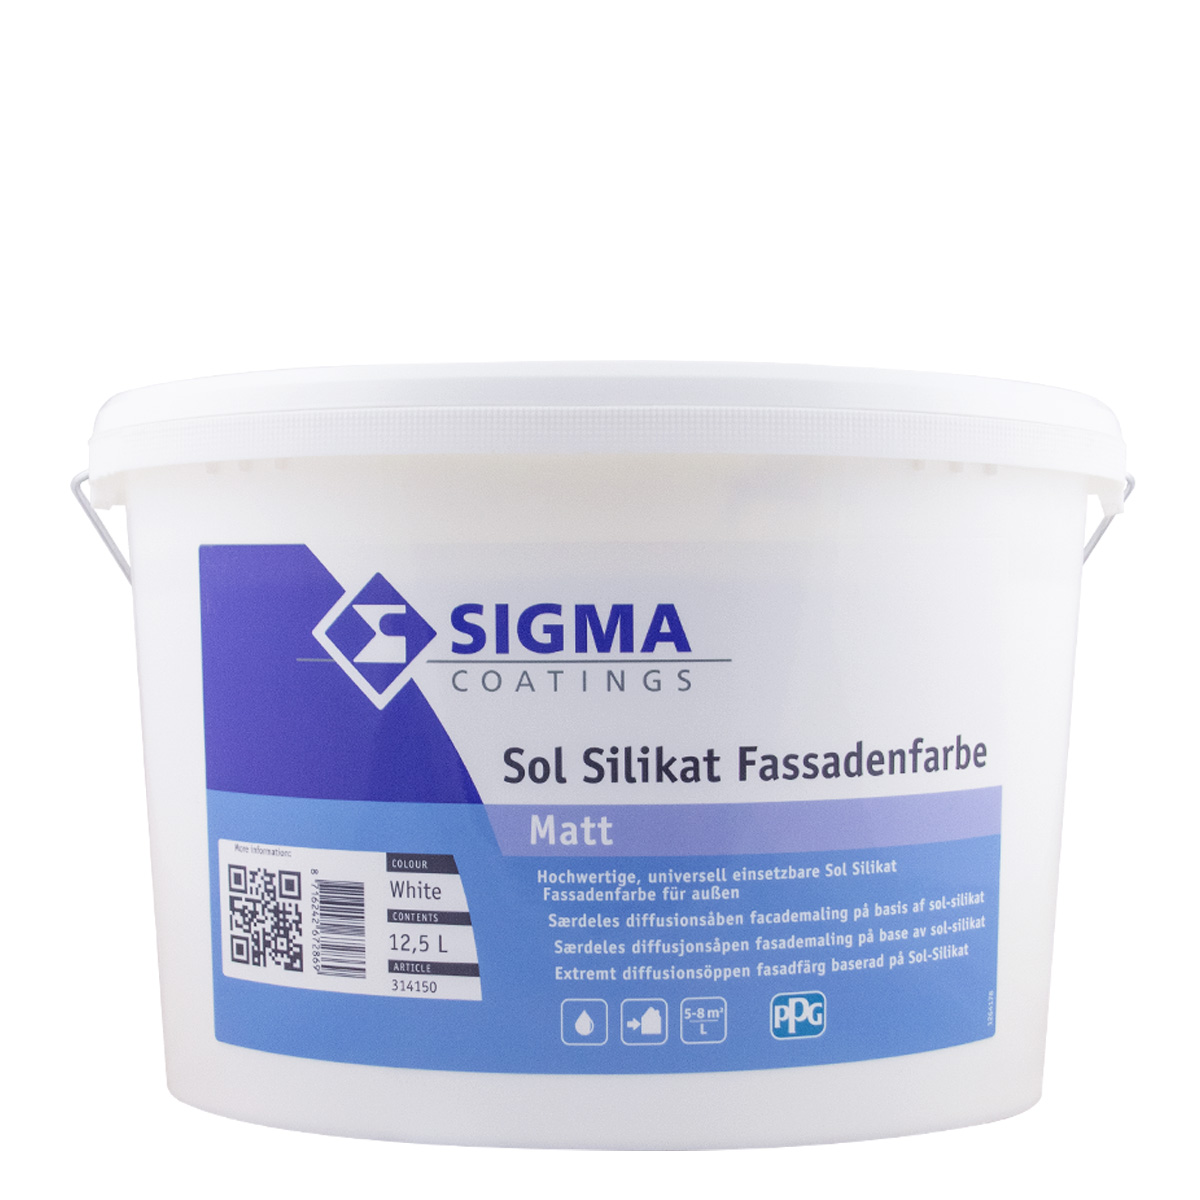 Sigma Sol Silikat Fassadenfarbe 12,5L weiss, Silikatfarbe